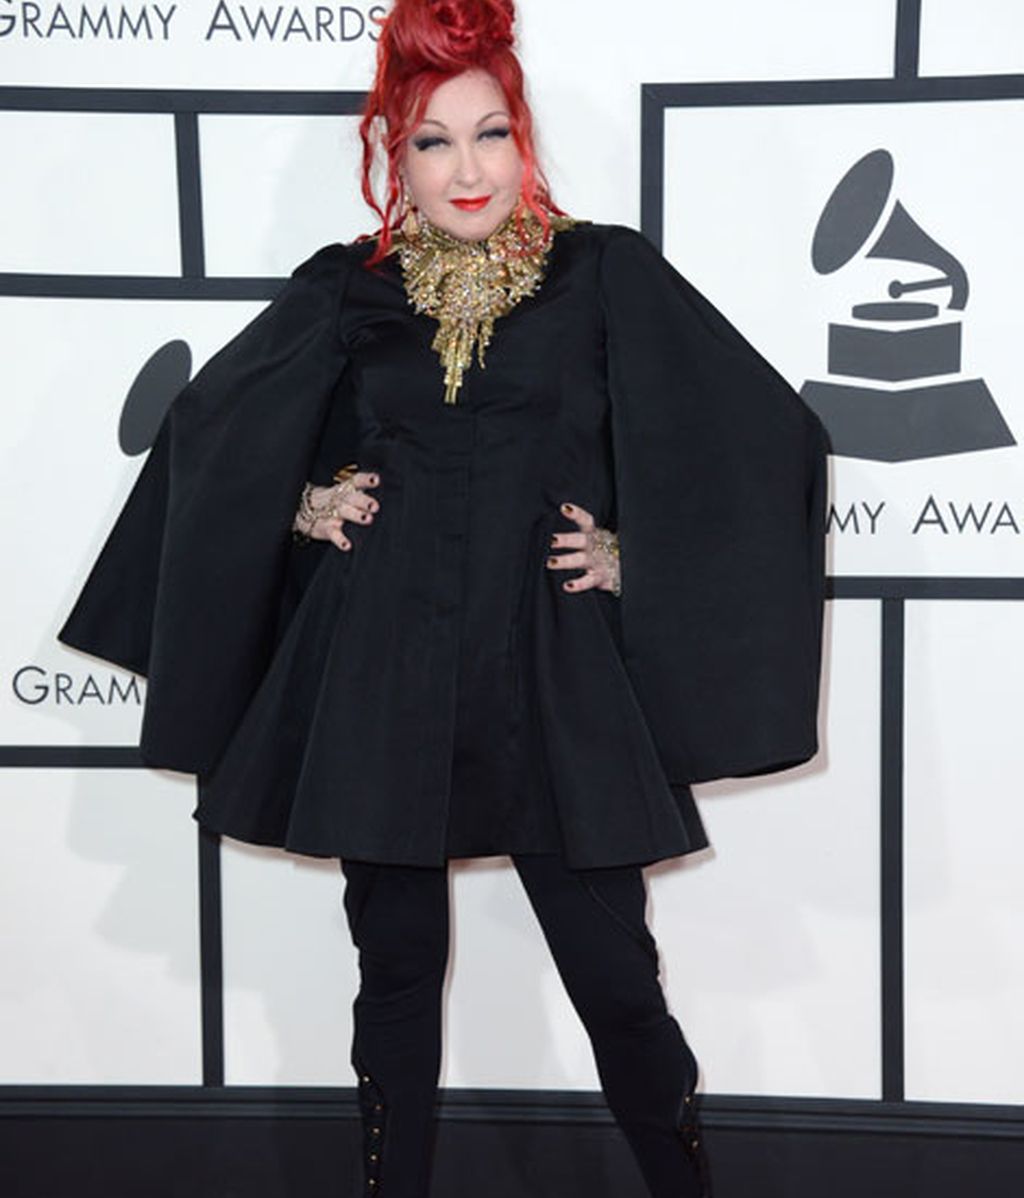 Brillos, escotes y transparencias, en la alfombra roja de los Grammy